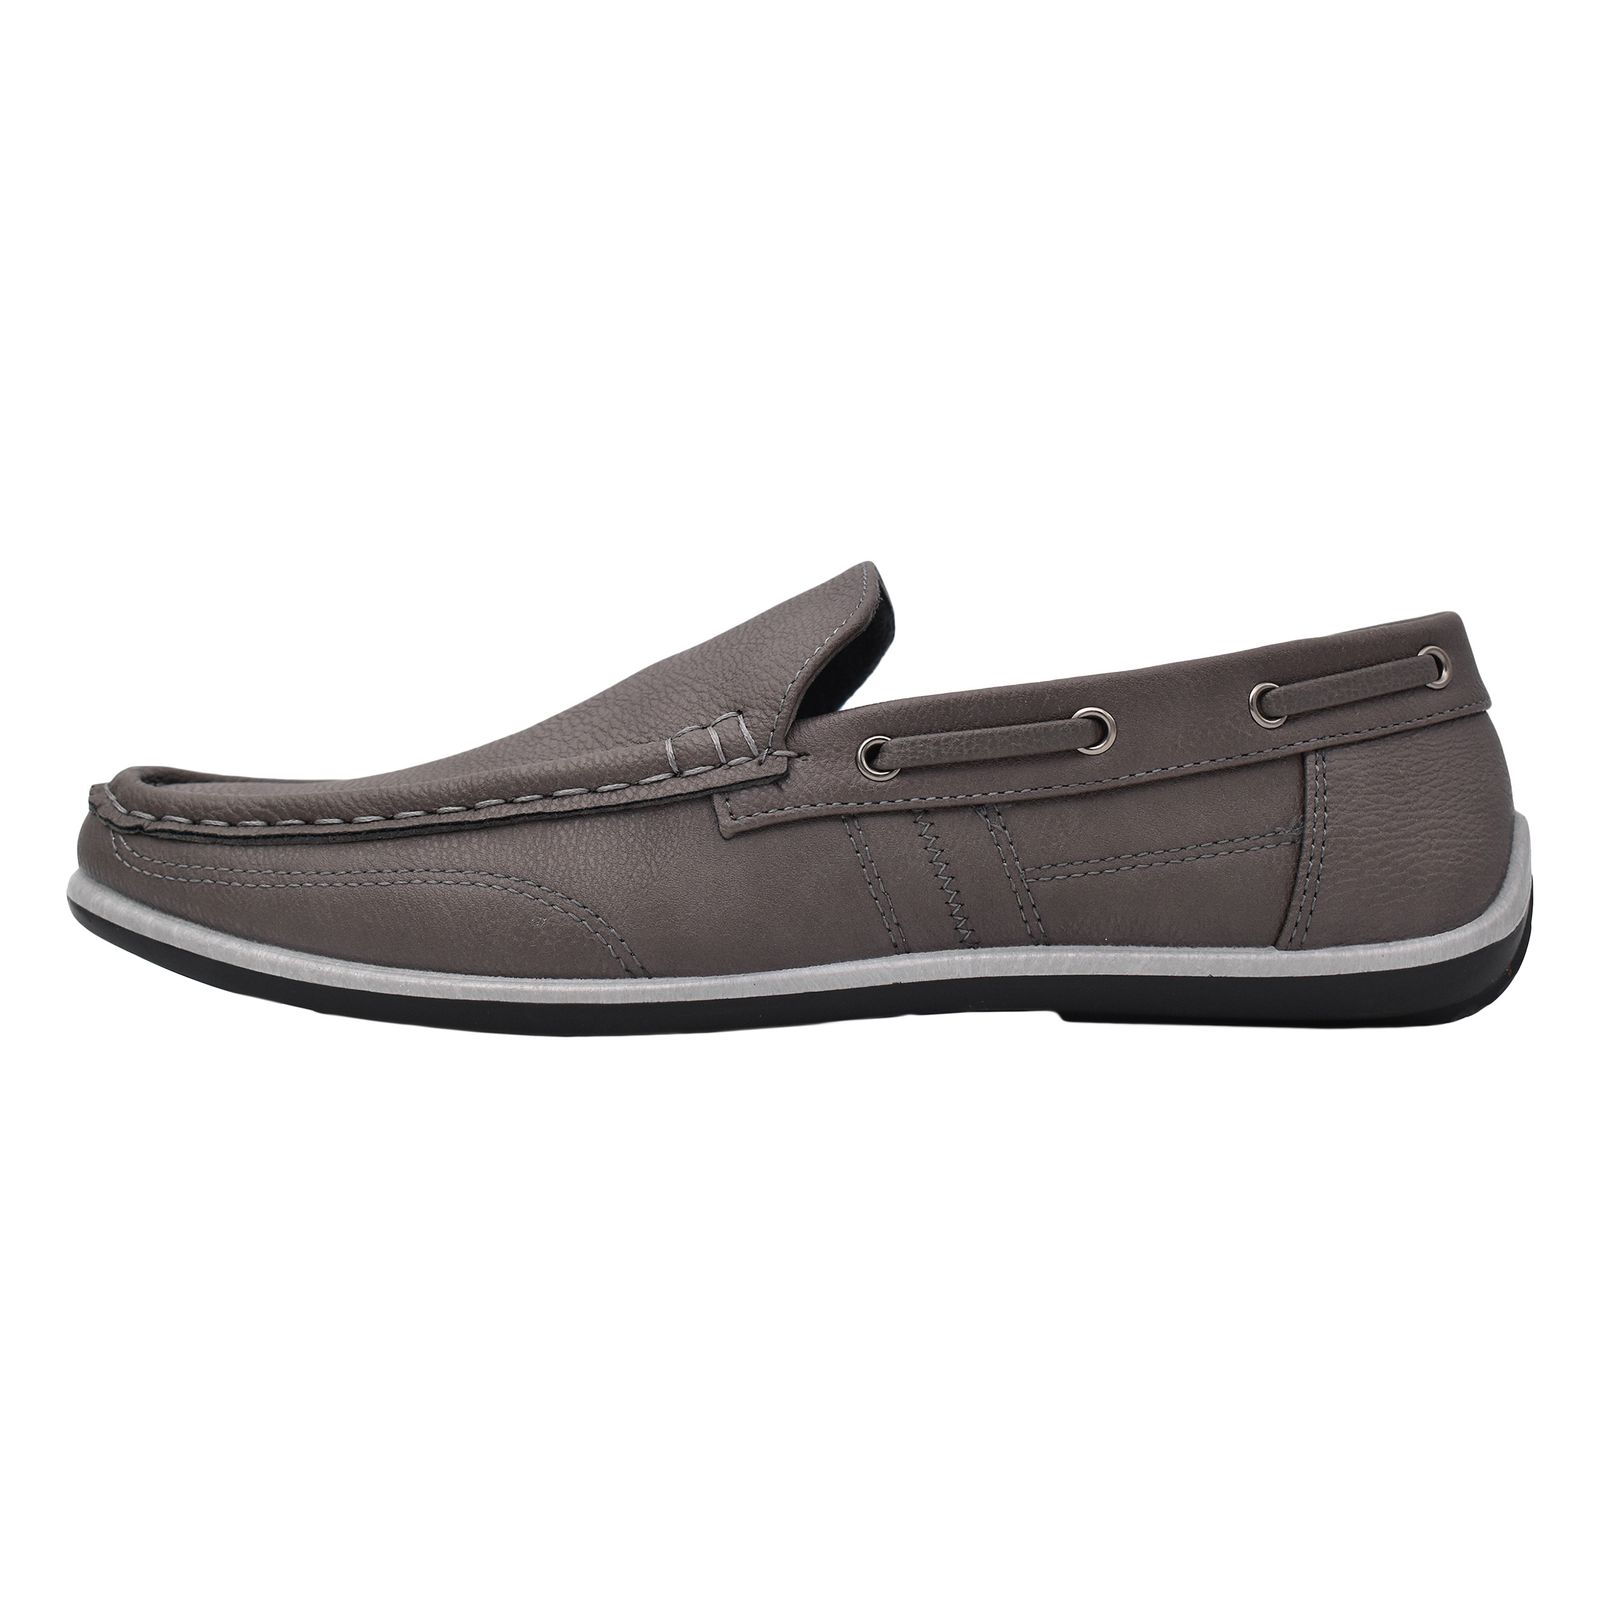 کفش روزمره مردانه پاما مدل KJ-056 کد G1539 -  - 1